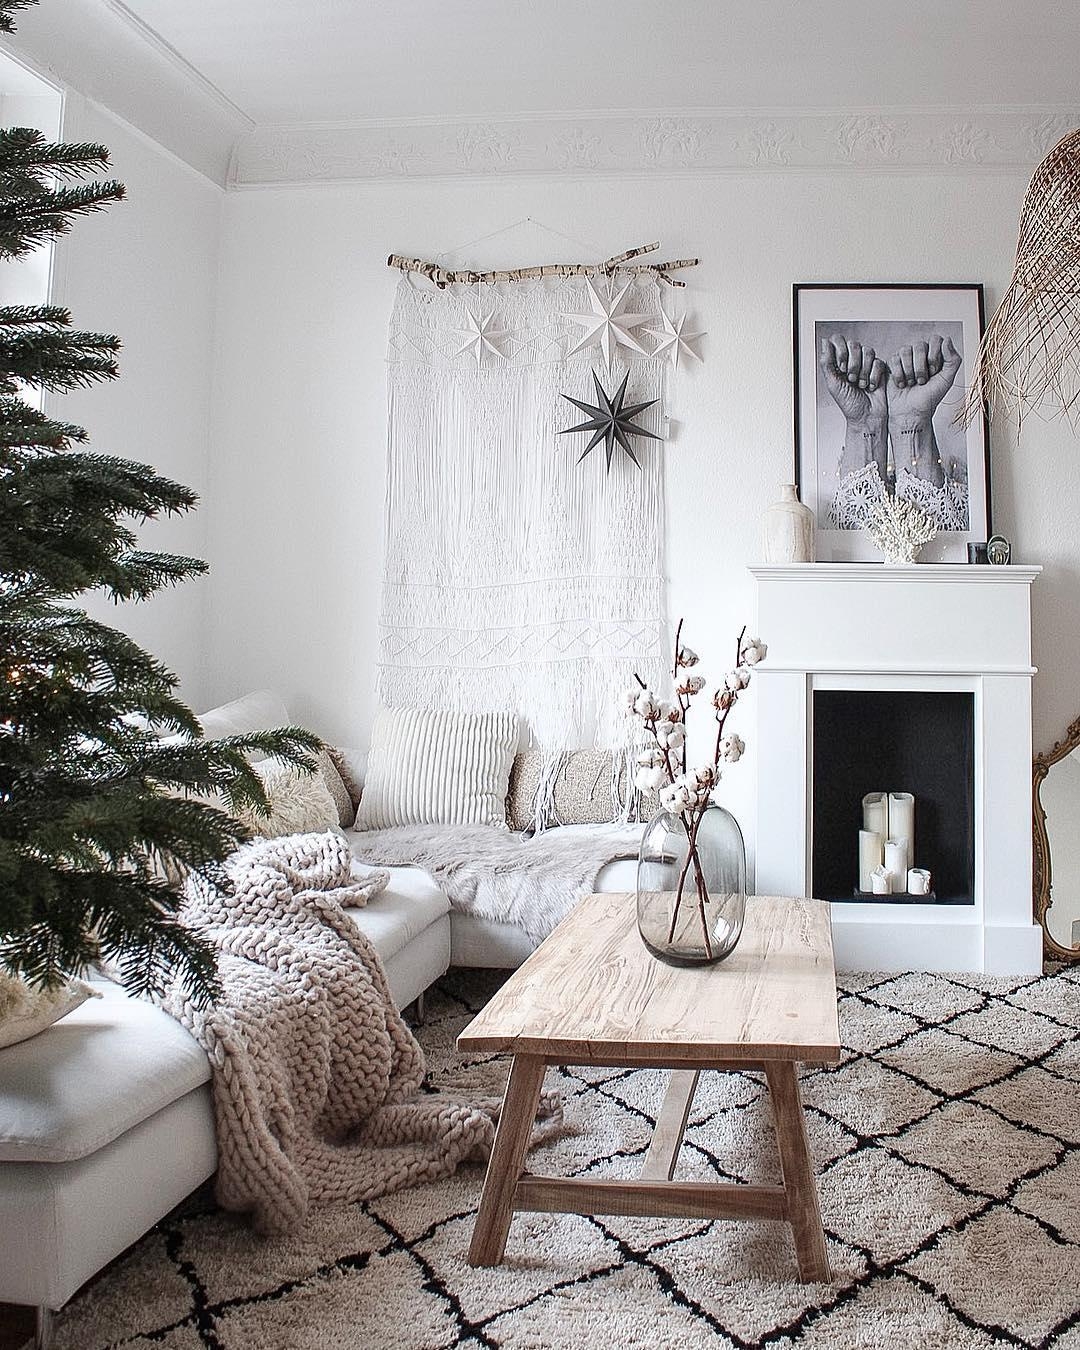 Unser #Weihnachtsbaum steht schon und wird am Wochenende geschmückt. #HYGGE #wohnzimmer #cozy #boho  #altbau #kamin